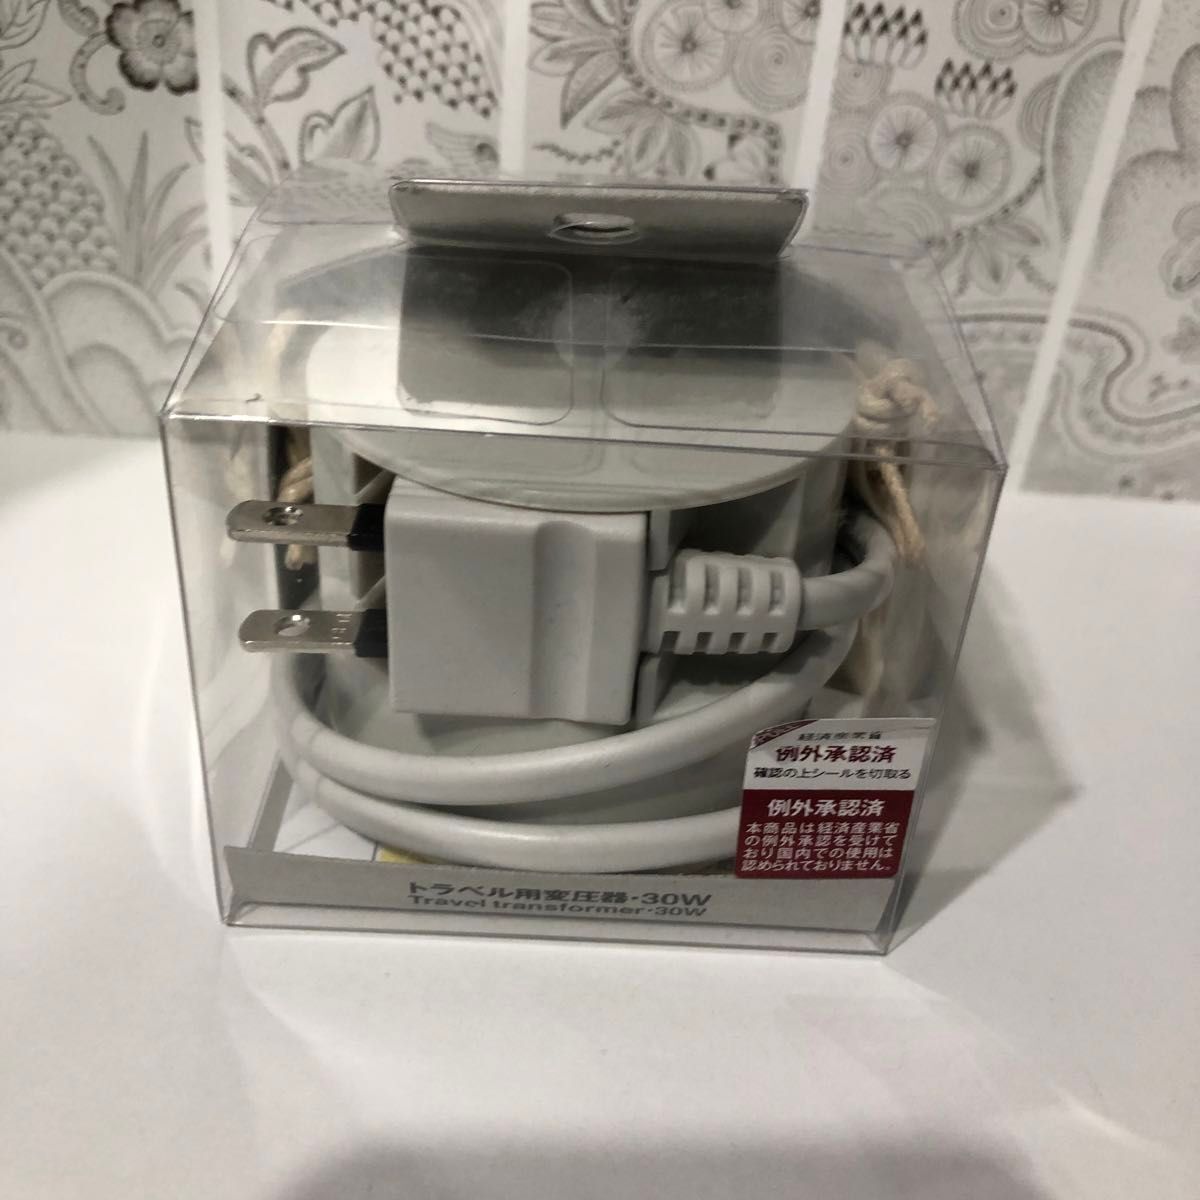 新品 無印良品 トラベル用変圧器・30W travel transformer ¥3,800_画像2